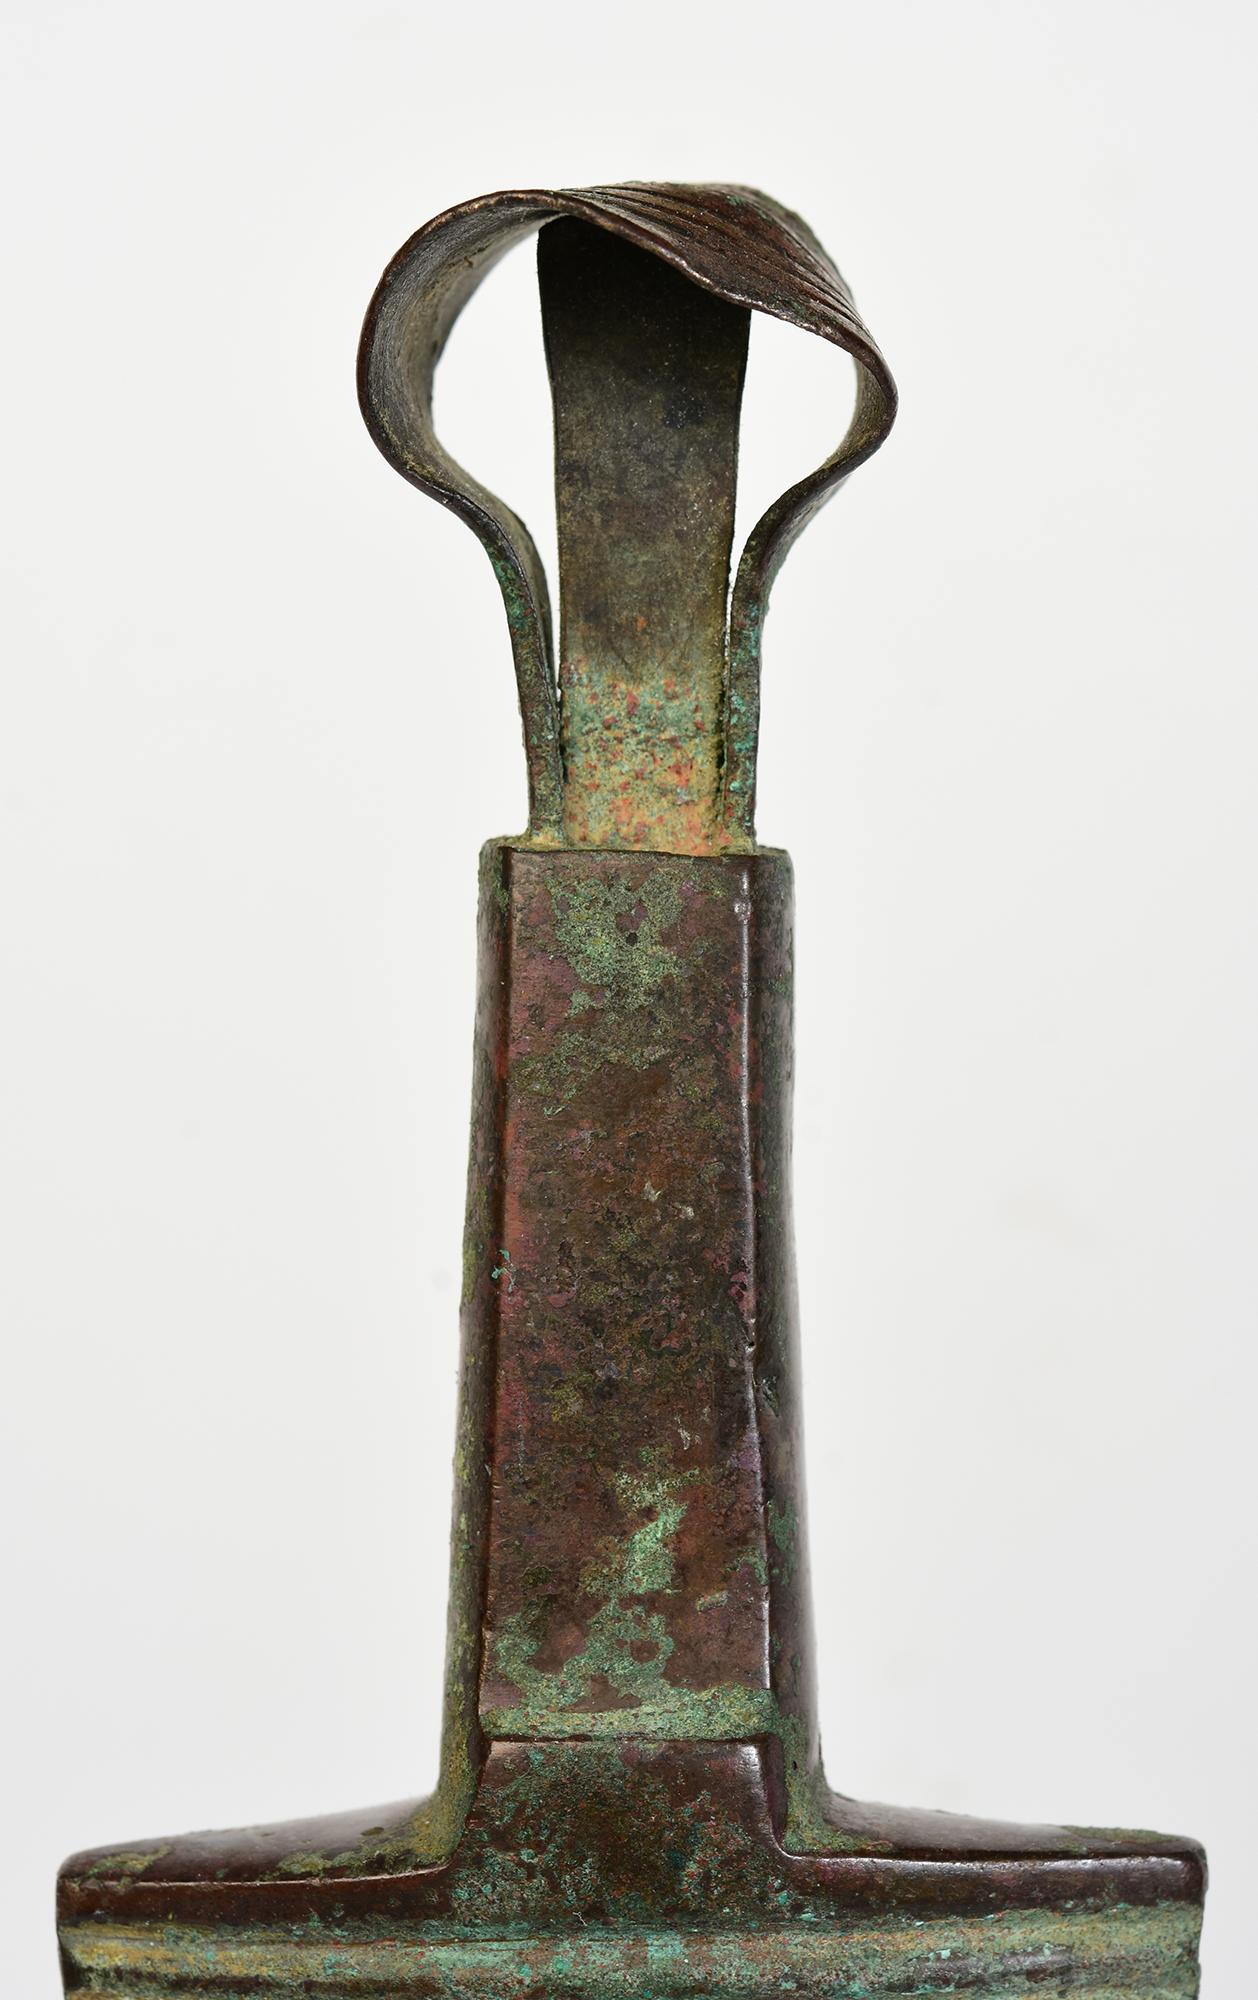 Ancienne épée en bronze du Luristan à patine verte.

Le bronze du Luristan provient de la province du Lorestan, une région de l'actuel Iran occidental située dans les monts Zagros. Riche d'une longue histoire, la culture du Luristan est connue